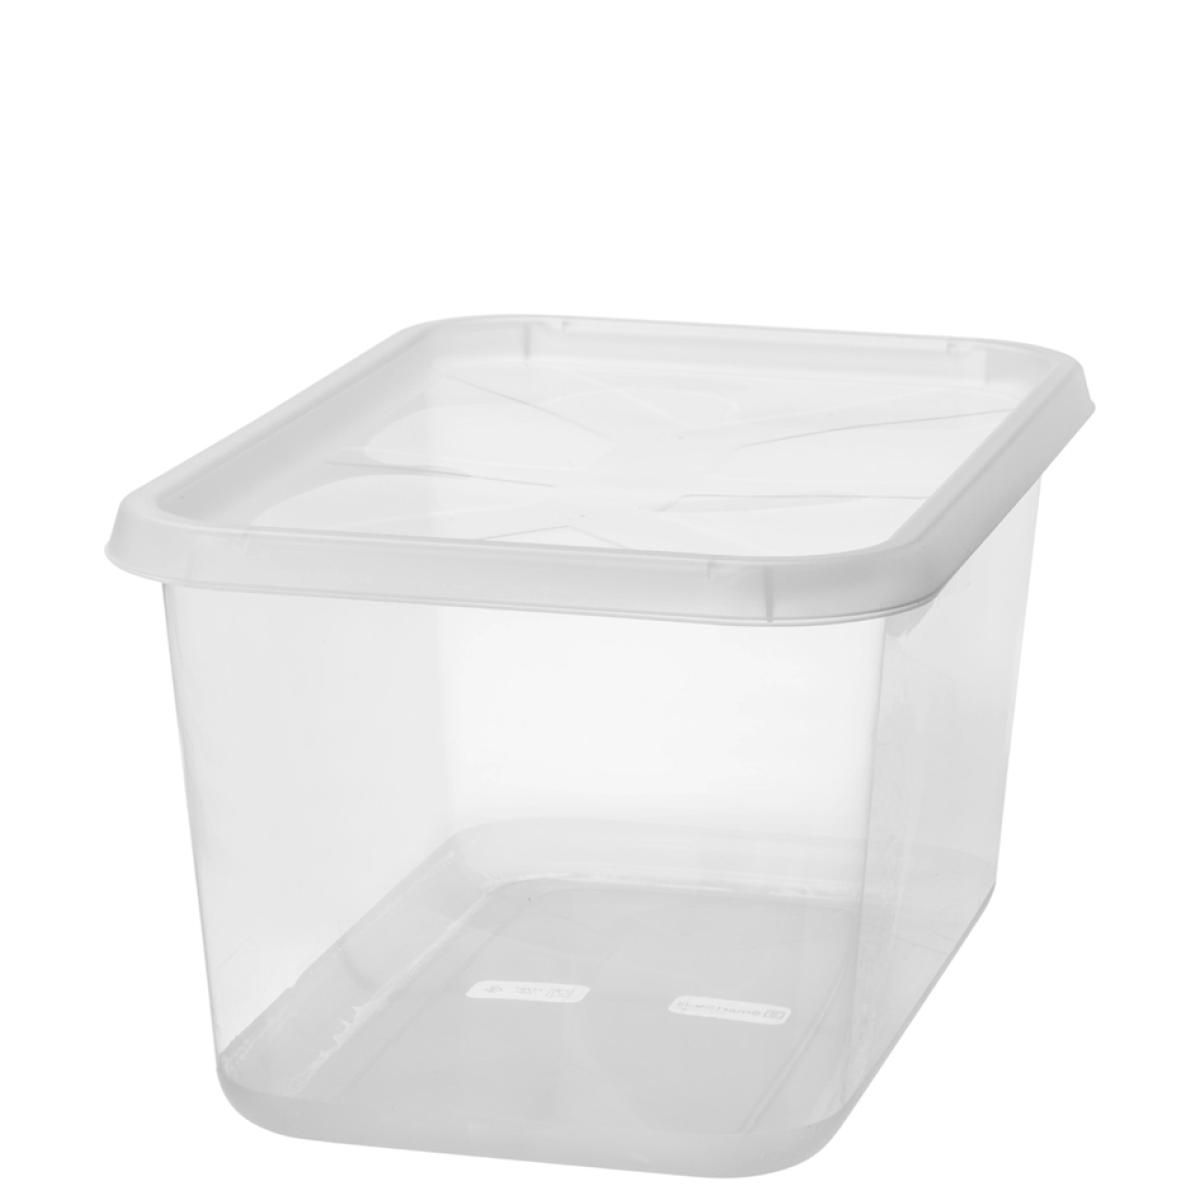 Aufbewahrungsbox BASIC S, 11 Liter, transparent smartstore 3061070 (733246205897